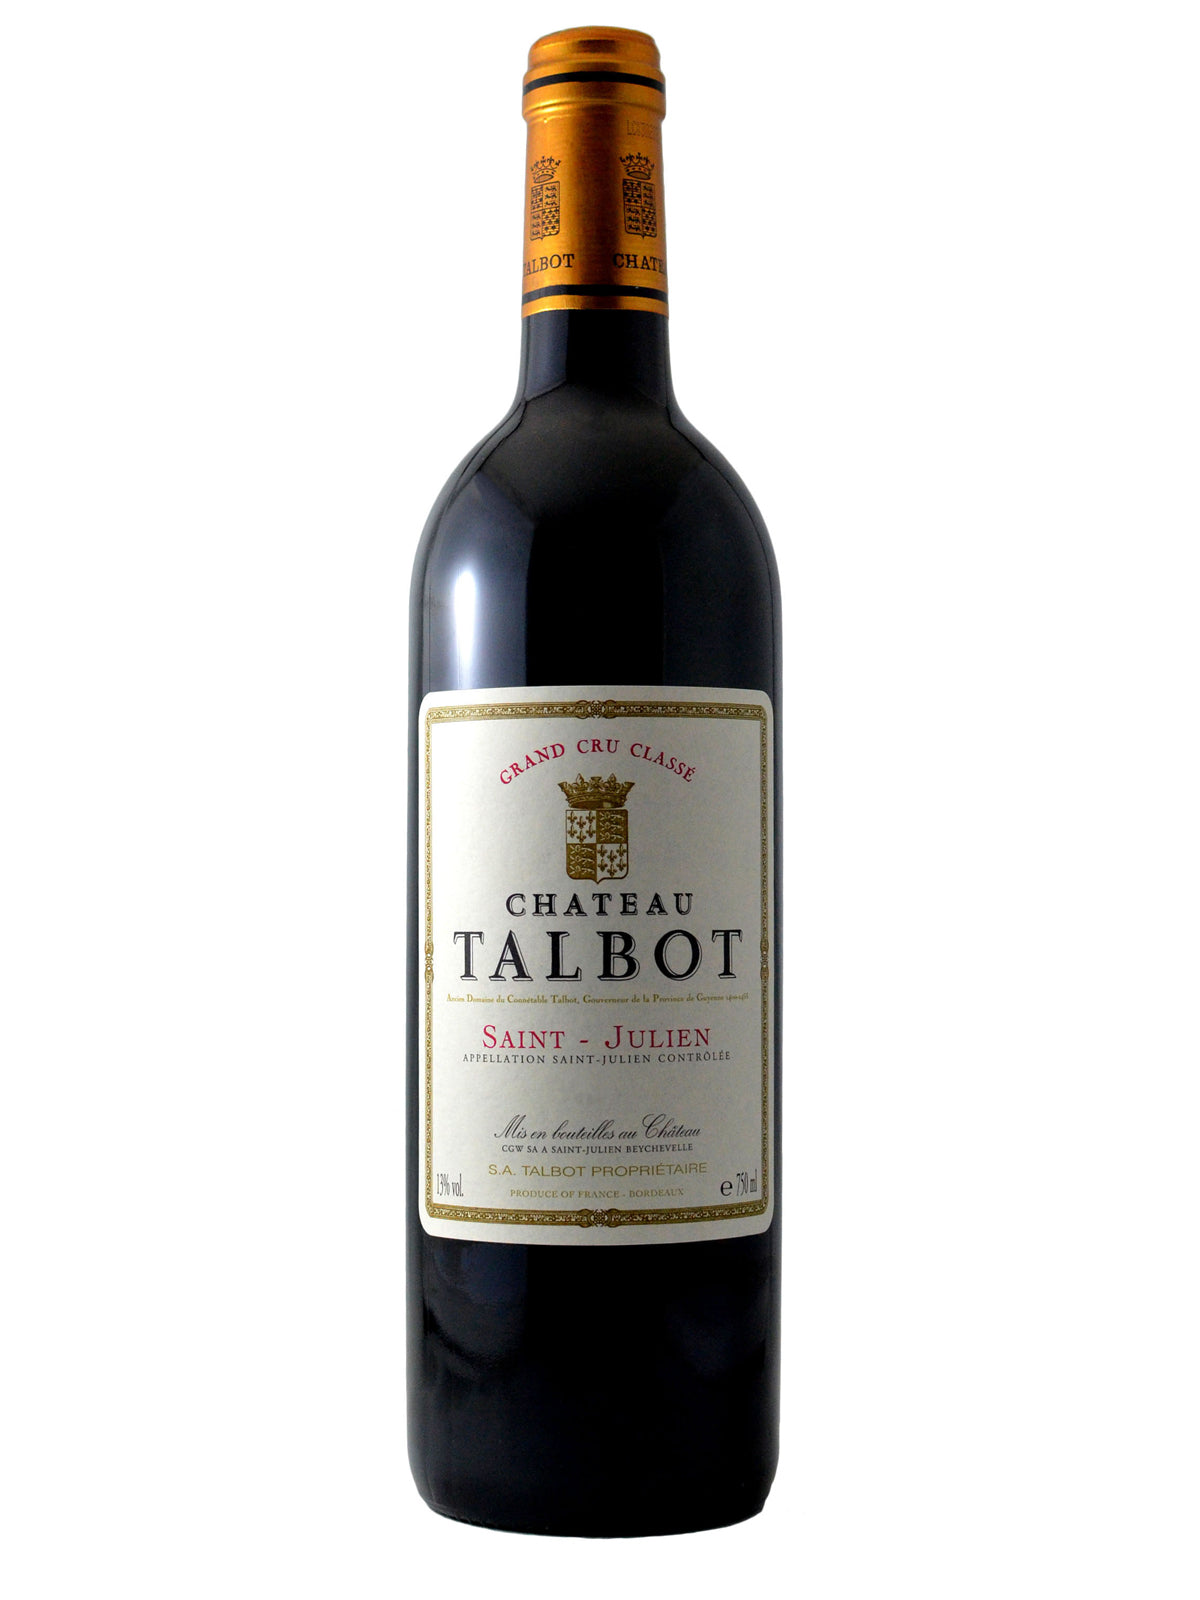 Château Talbot 2004 Saint-Julien